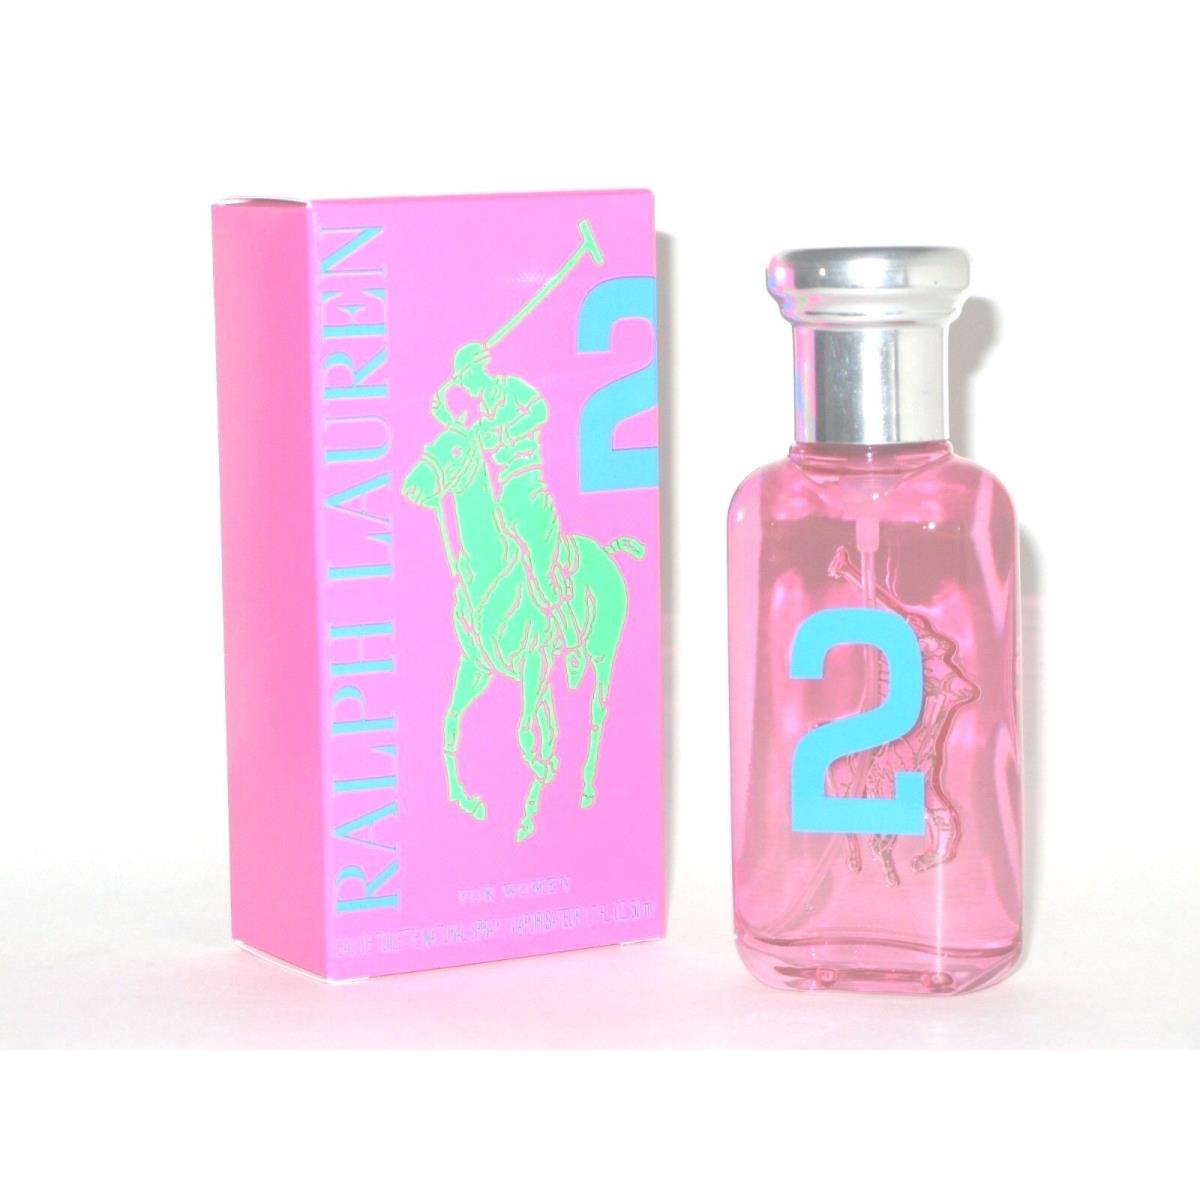 Ralph Lauren Big Pony 2 Pink 1.7 oz / 50ml Eau De Toilette Spray For Women  - Ralph Lauren perfume,cologne,fragrance,parfum - 3605975062489